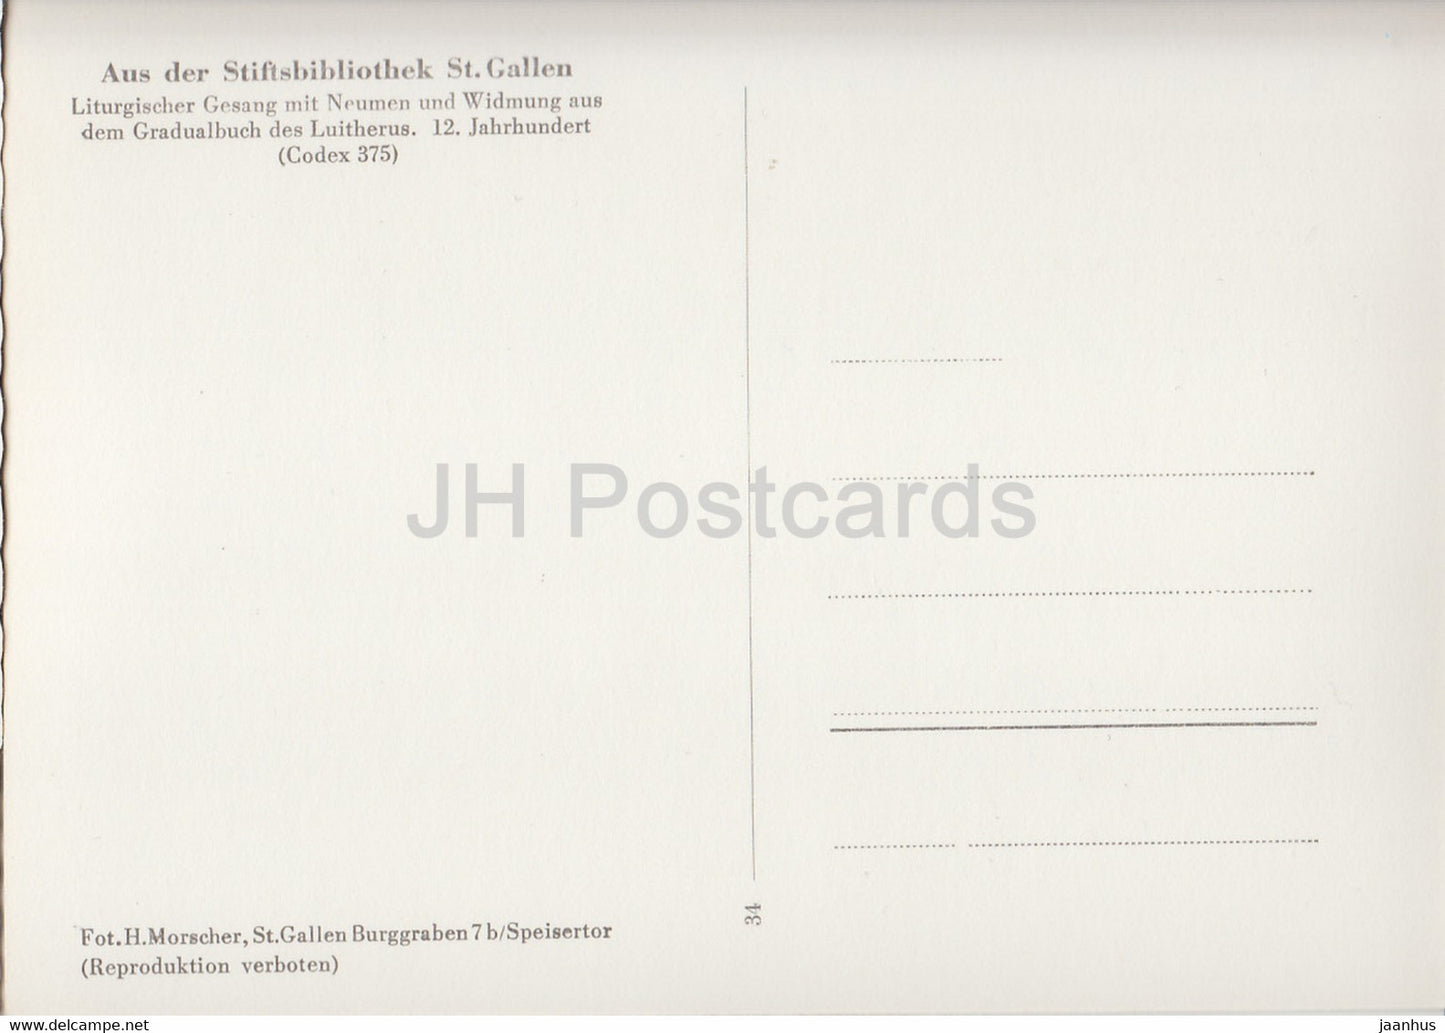 Liturgischer Gesang - Aus der Stiftsbibliothek St. Gallen - Bibliothek - 34 - alte Postkarte - Schweiz - unbenutzt